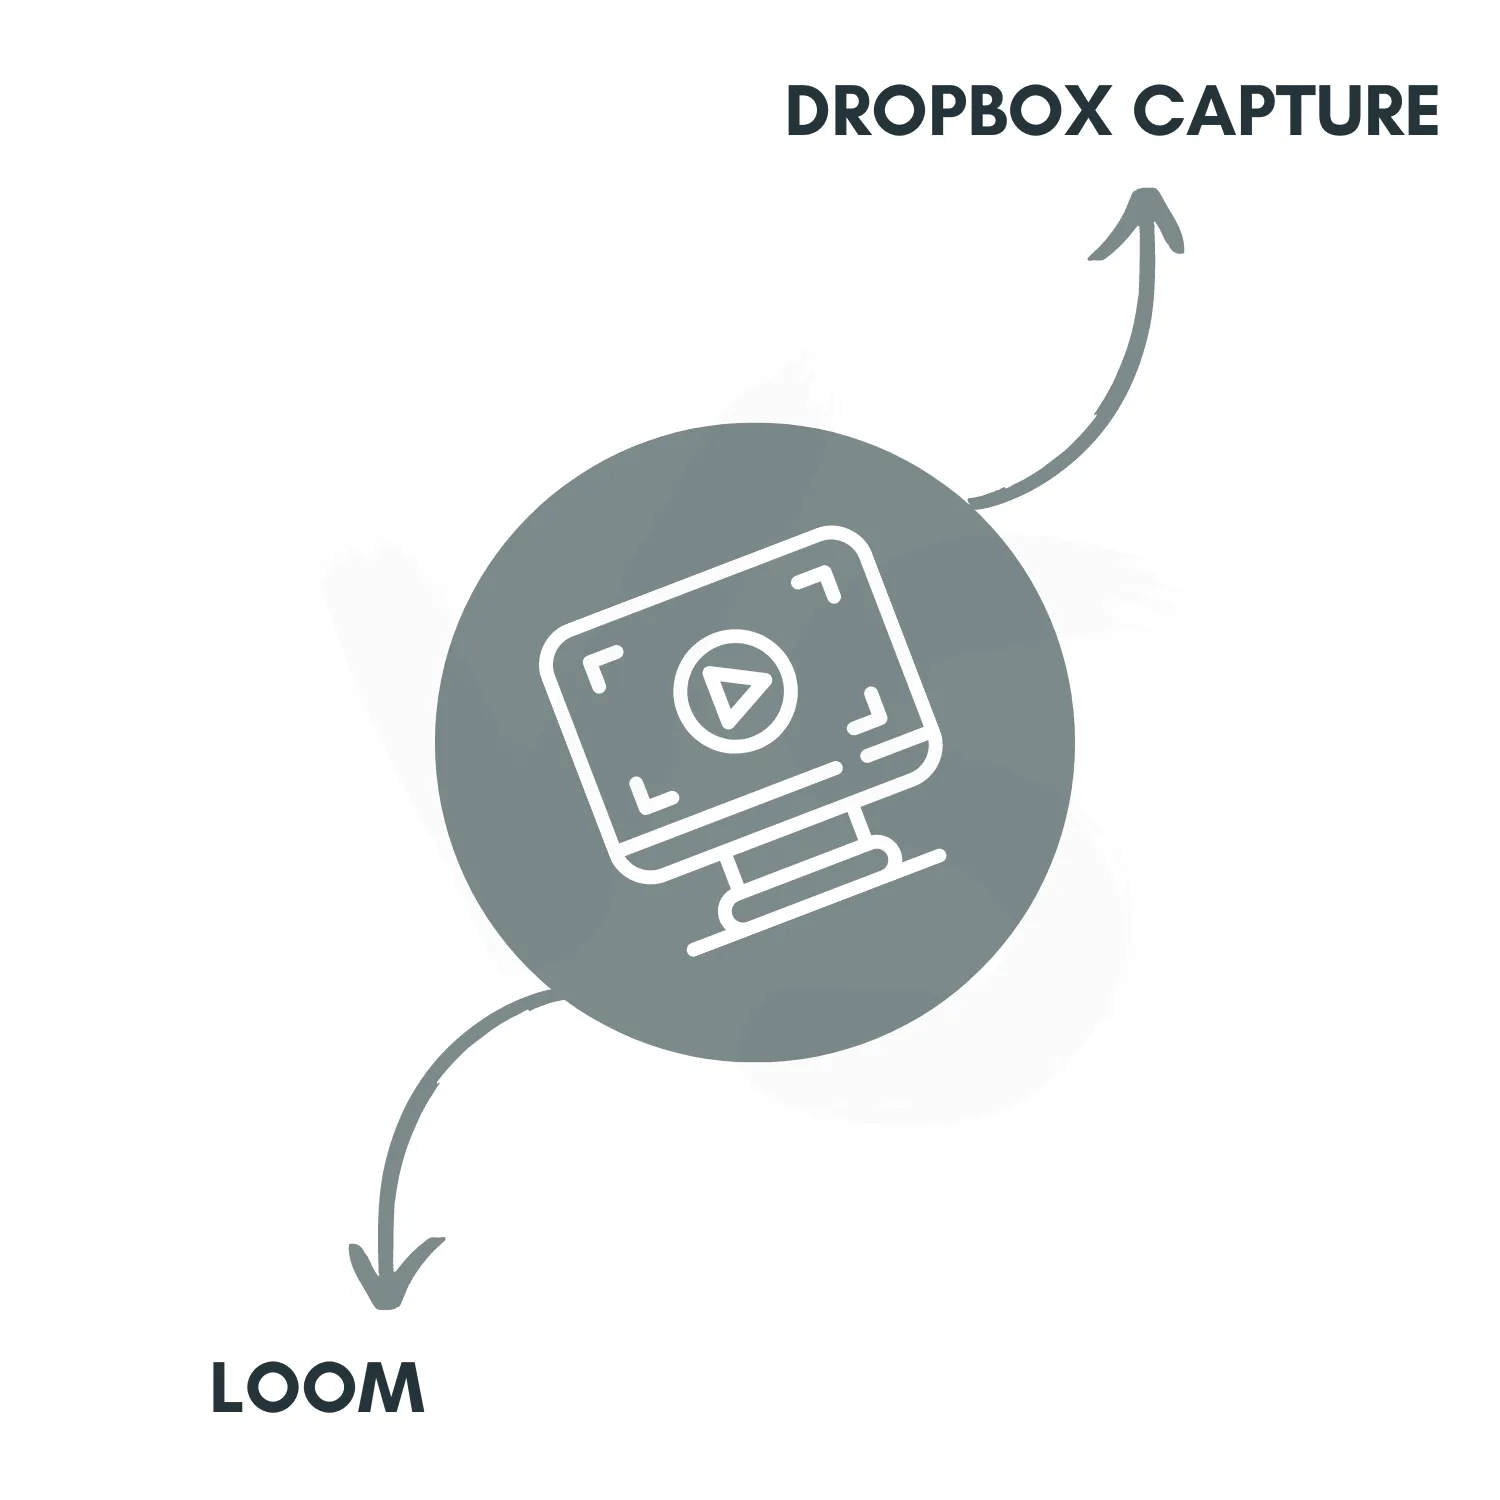 Dropbox Capture vs Loom